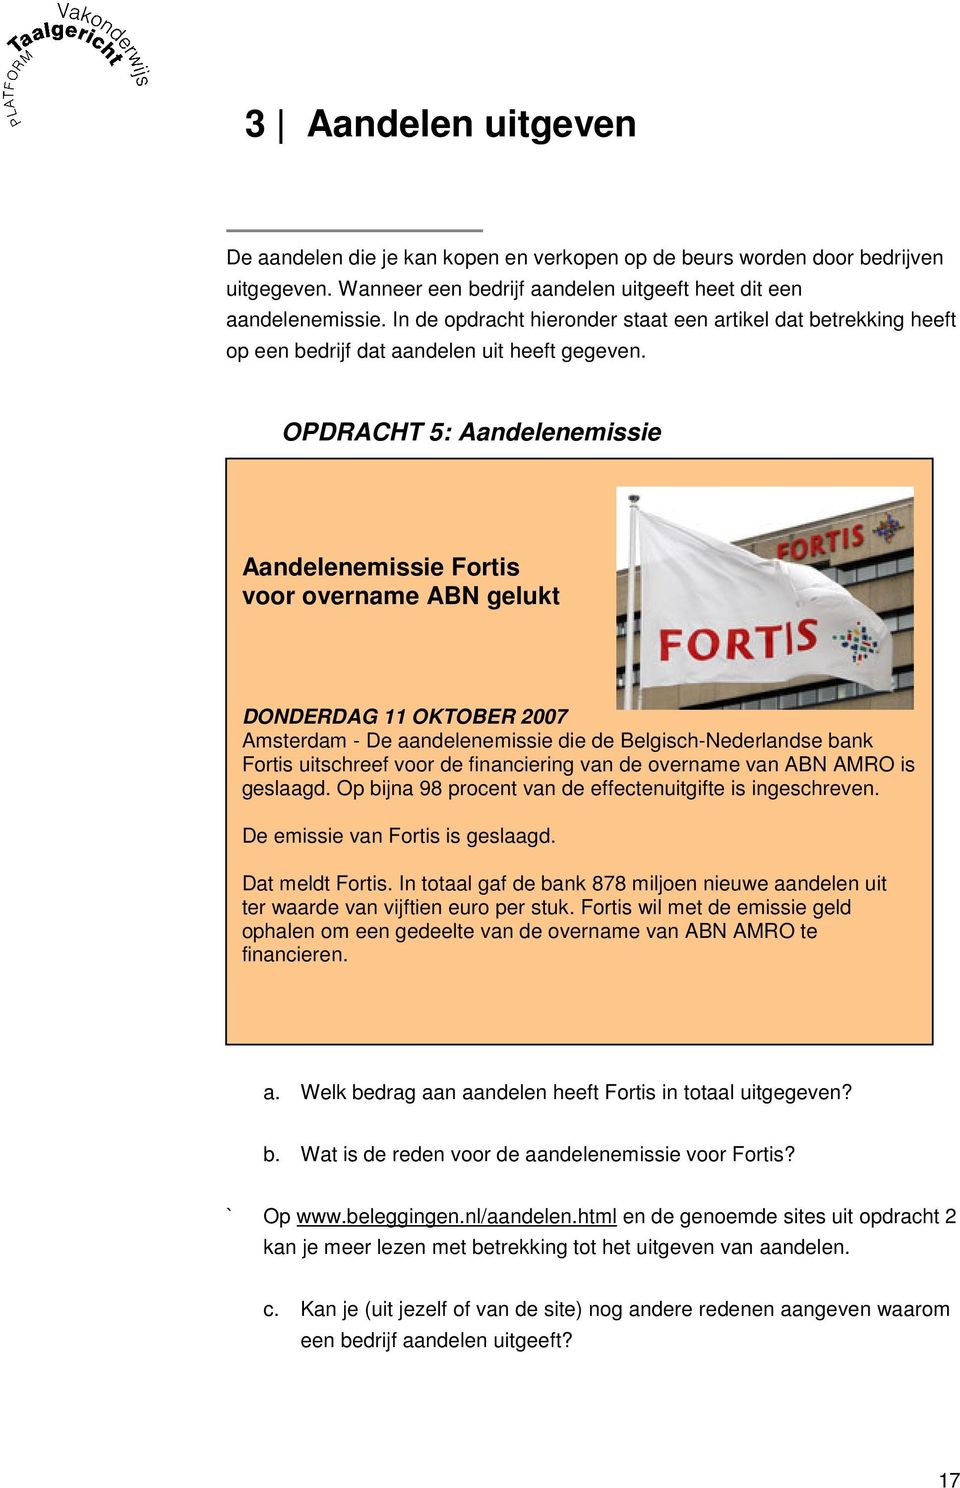 OPDRACHT 5: Aandelenemissie Aandelenemissie Fortis voor overname ABN gelukt DONDERDAG 11 OKTOBER 2007 Amsterdam - De aandelenemissie die de Belgisch-Nederlandse bank Fortis uitschreef voor de